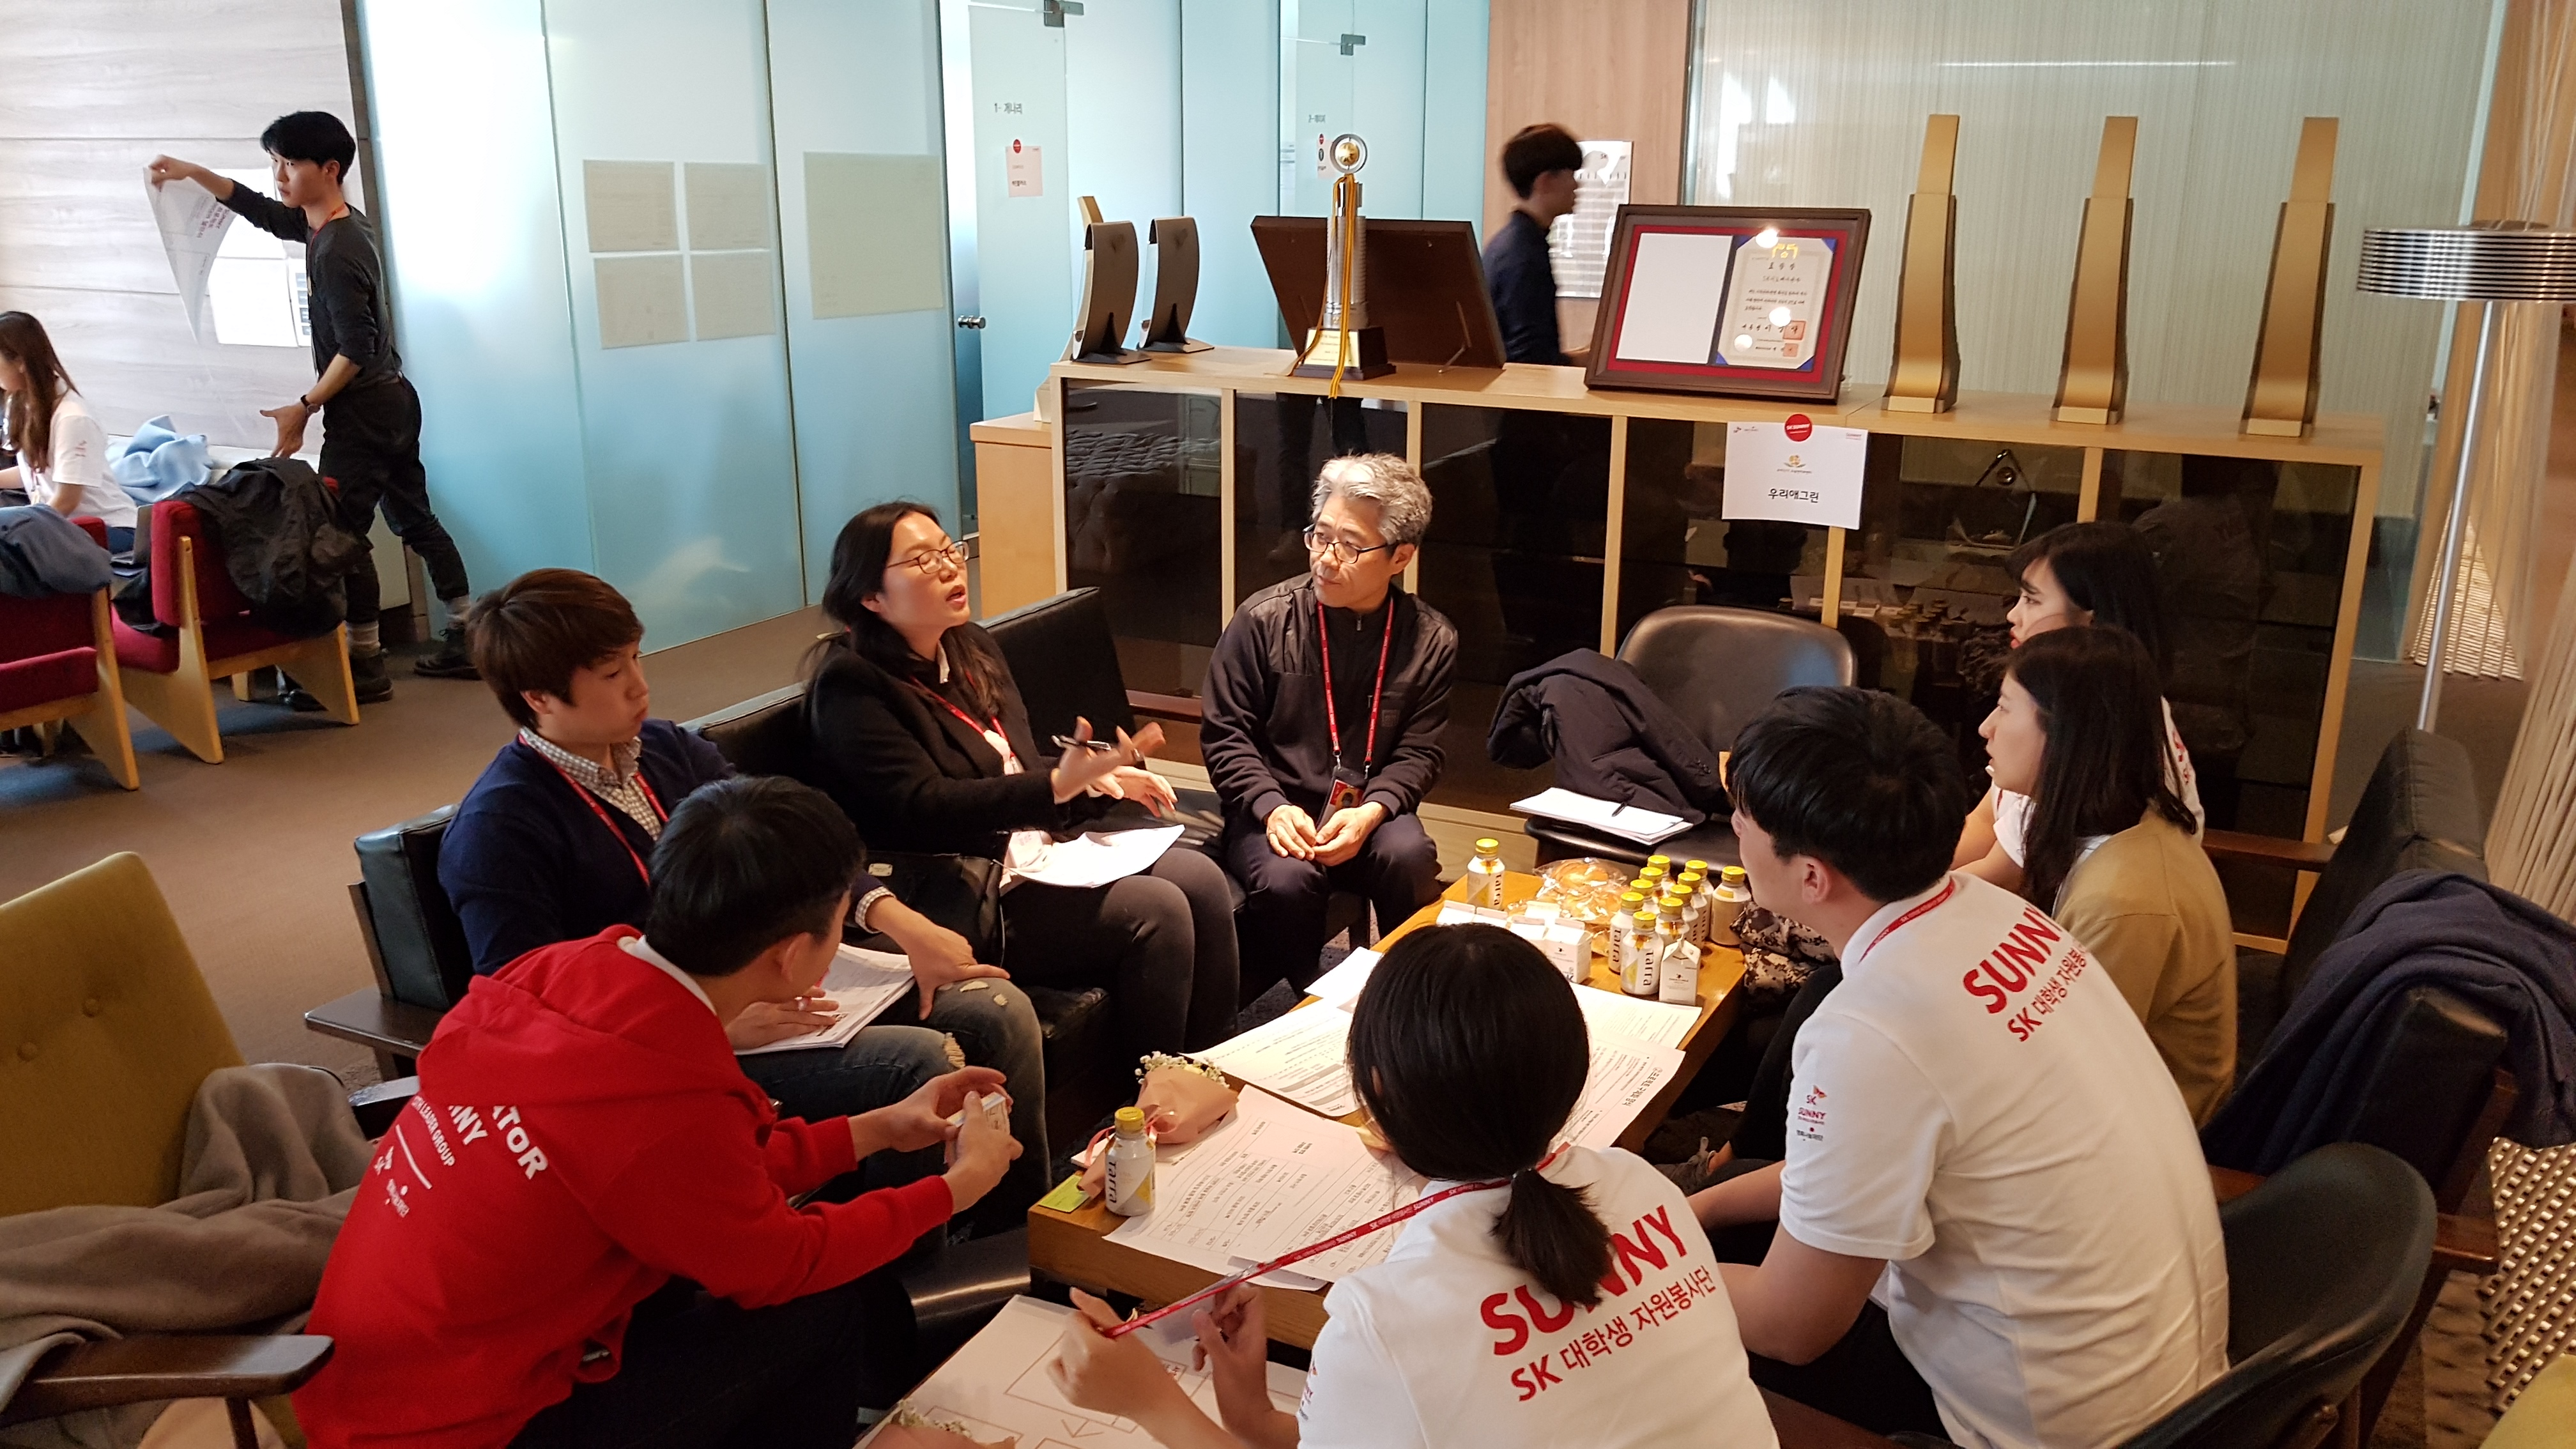 SK SUNNY 사회적기업 서포터즈 워크숍 참관 사진-참여자들이 토의하고 있는 모습